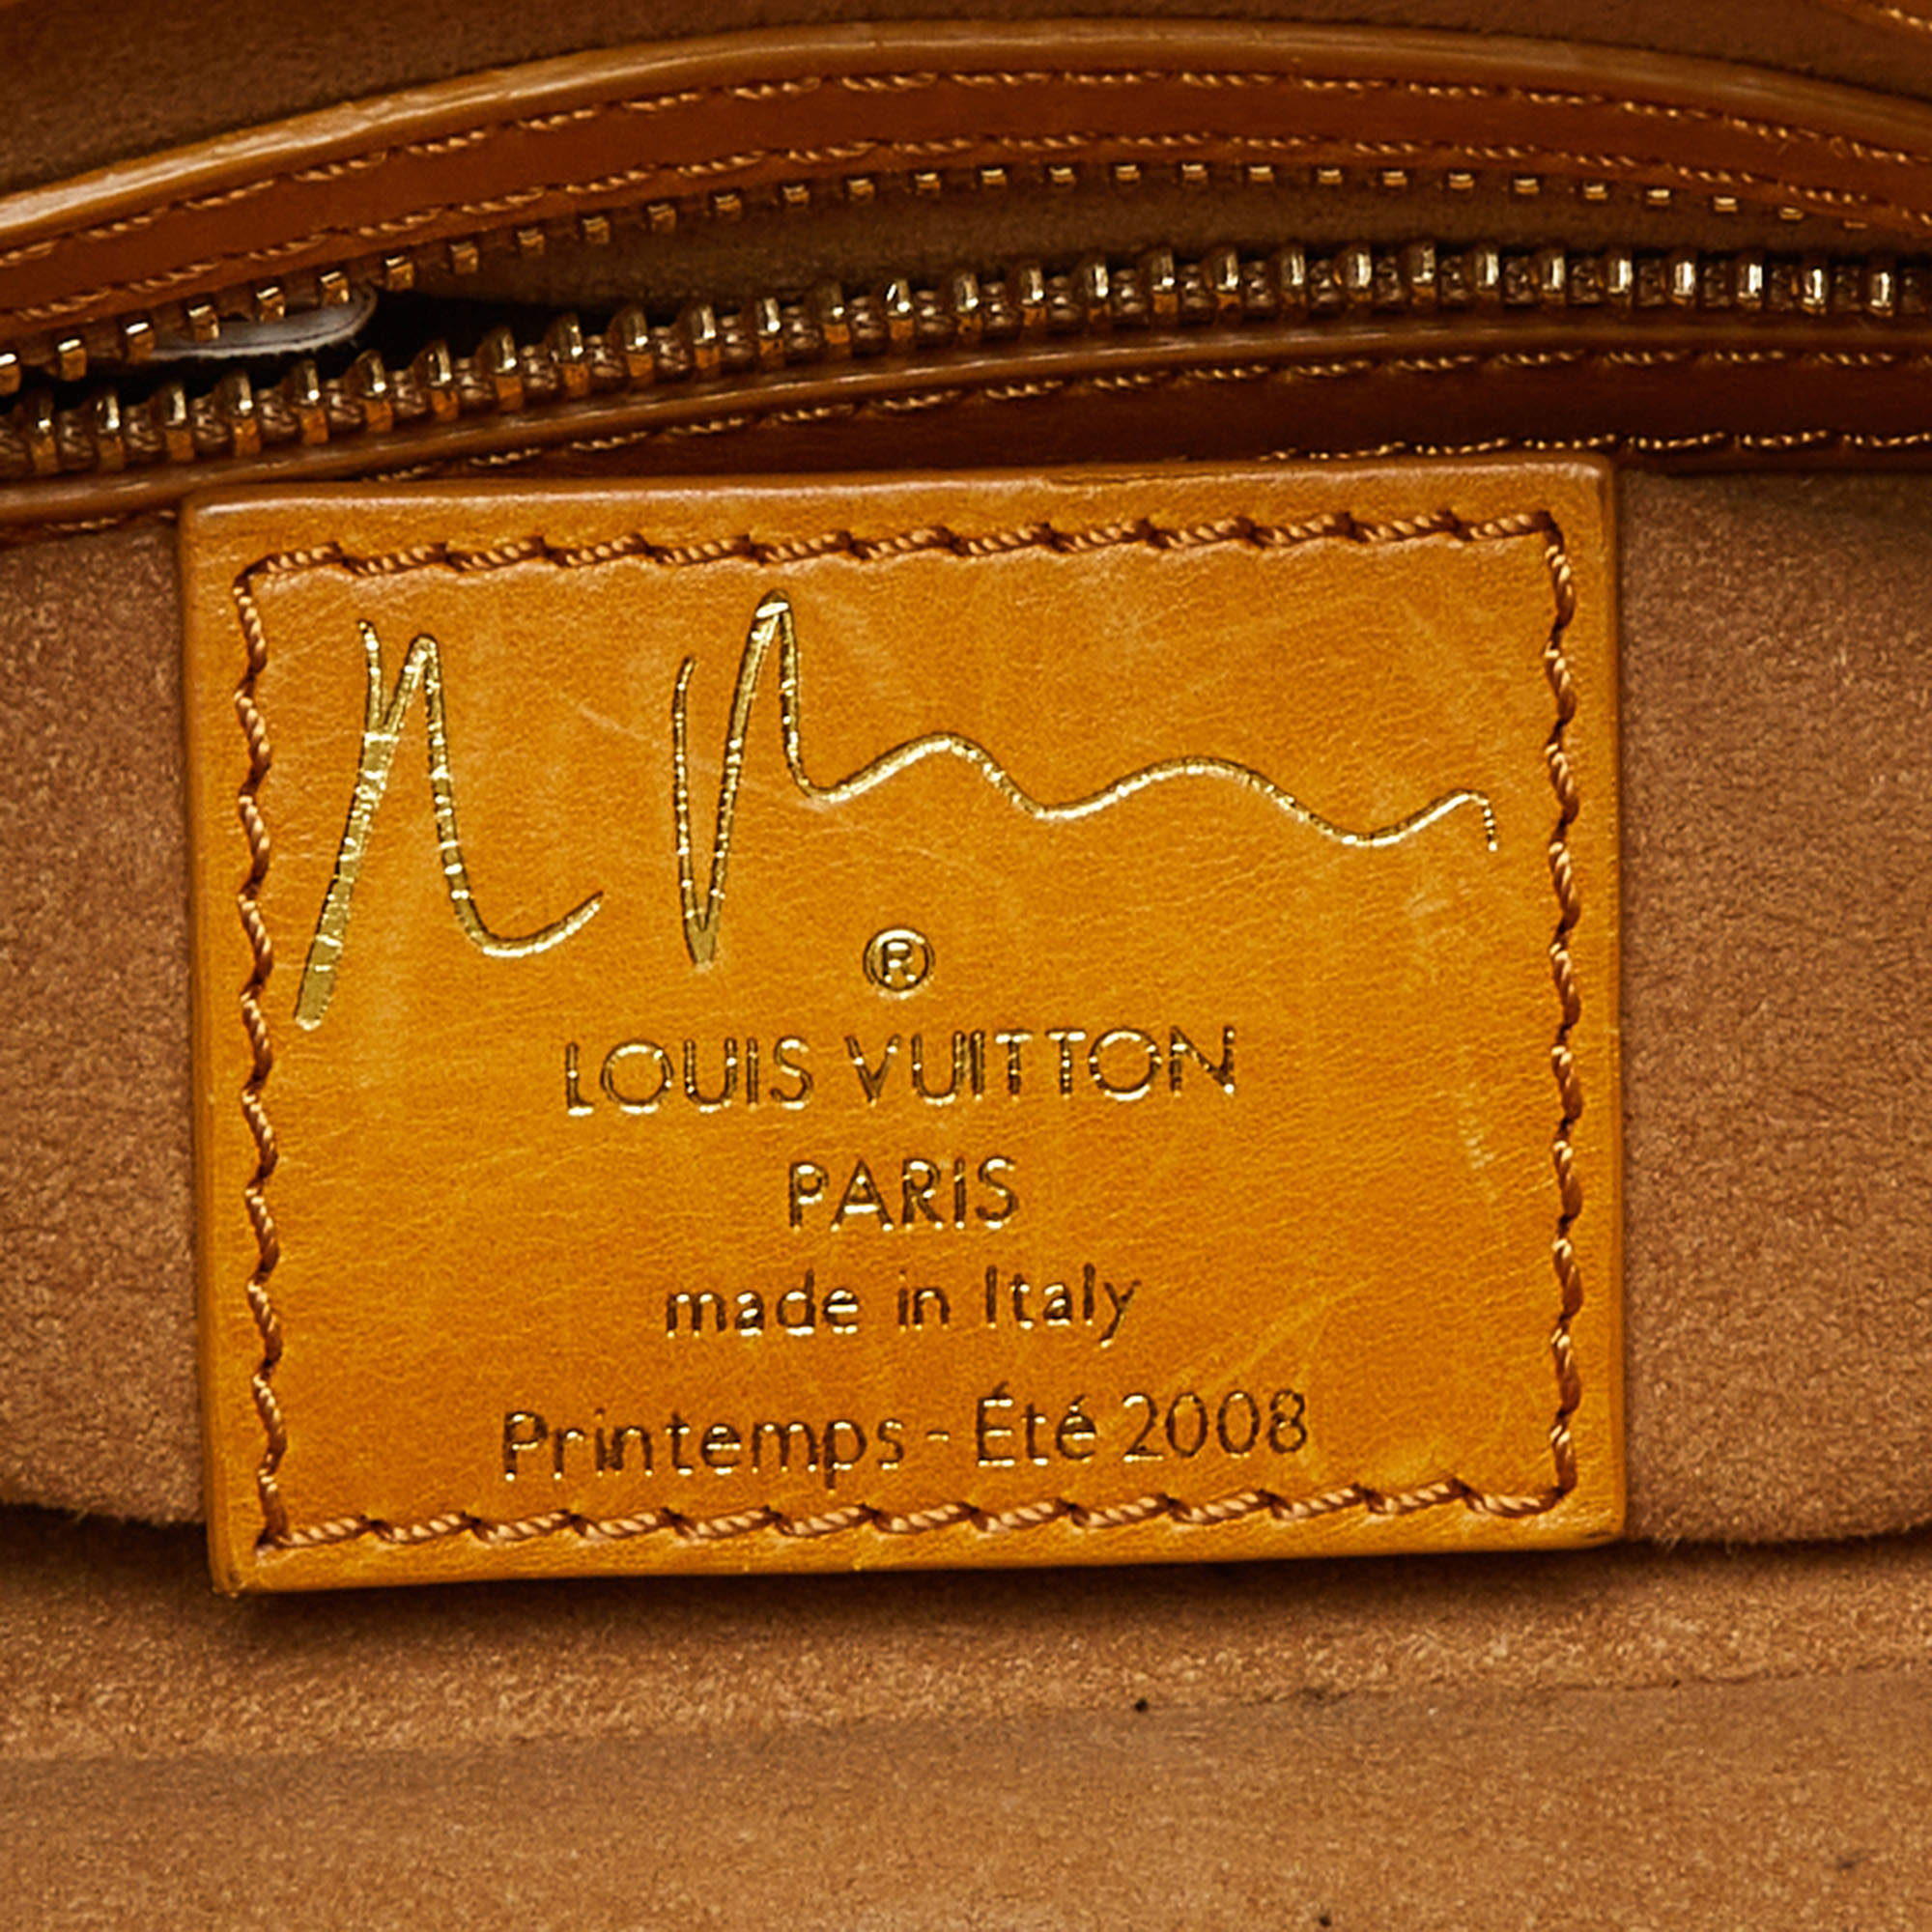 Louis Vuitton Limited Edition Richard Prince Monogram Watercolor Aquarelle  Jamais Bag - ShopStyle